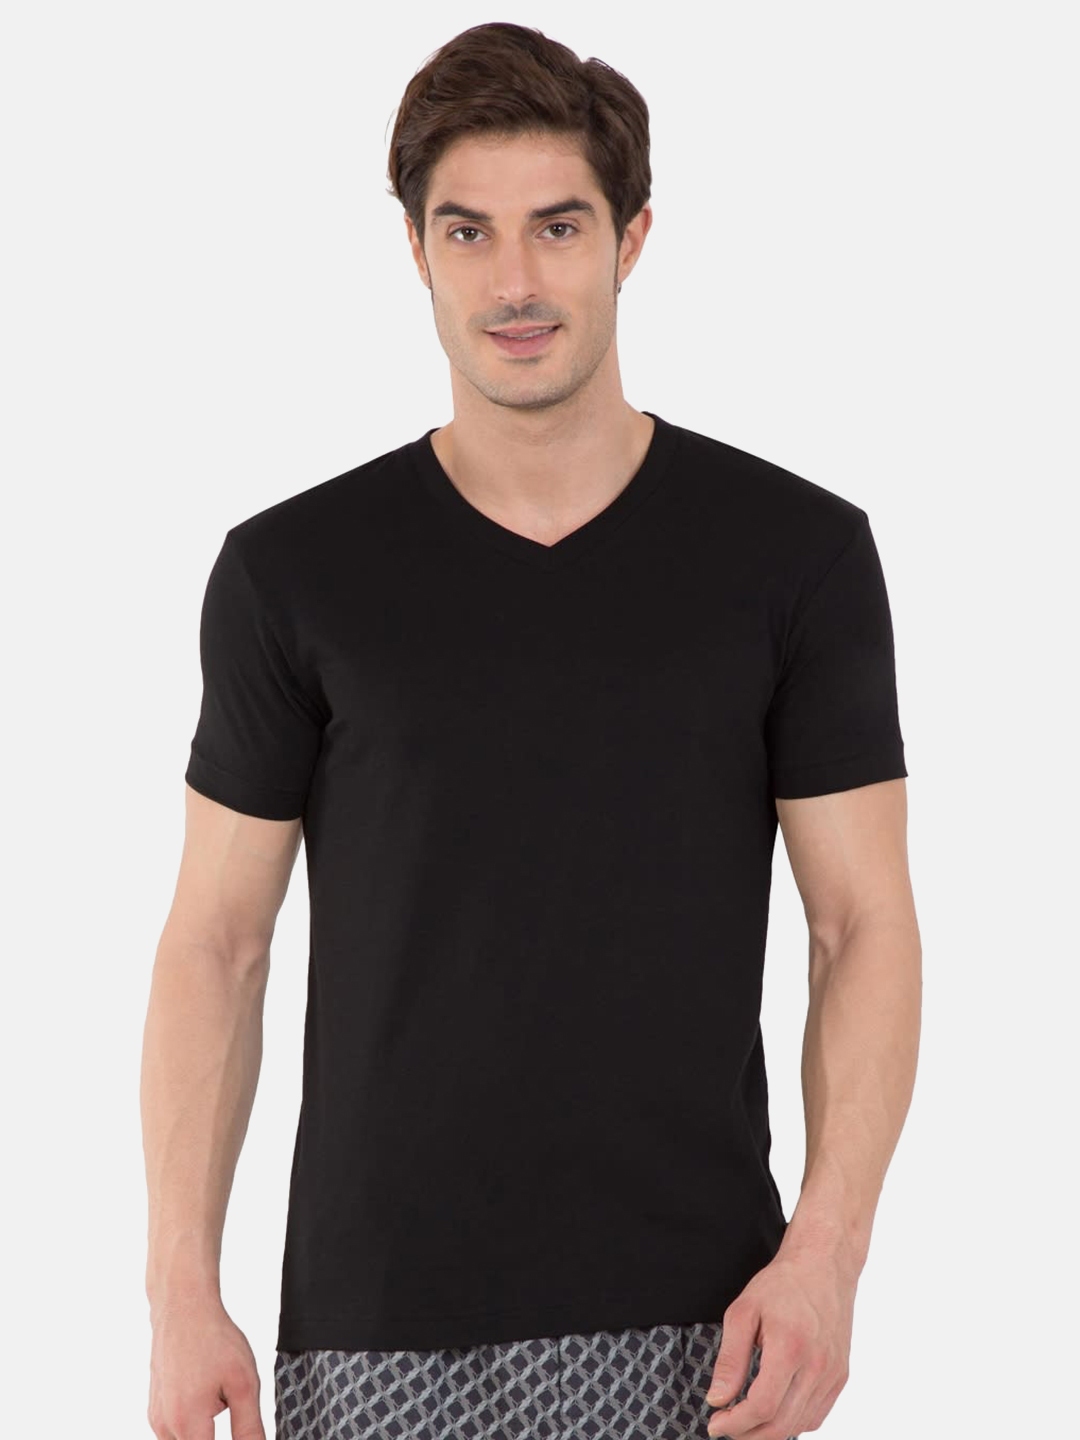 en lille Overleve Sparsommelig Buy Jockey Men Black Solid V Neck Lounge T Shirt 2726 0105 - Lounge Tshirts  for Men 7276838 | Myntra